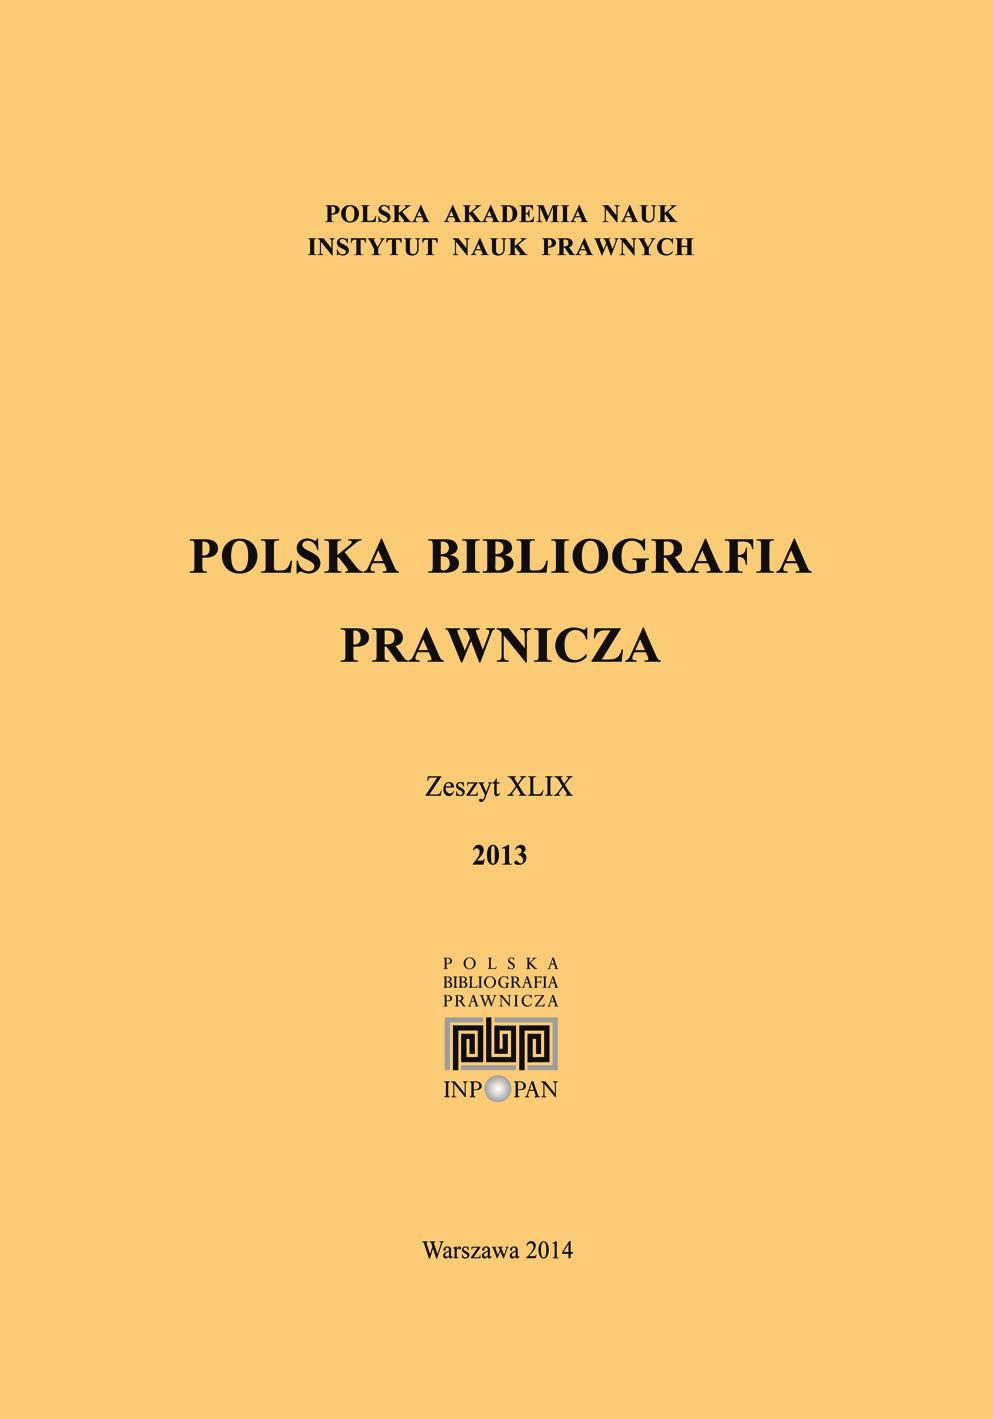 POLSKA BIBLIOGRAFIA